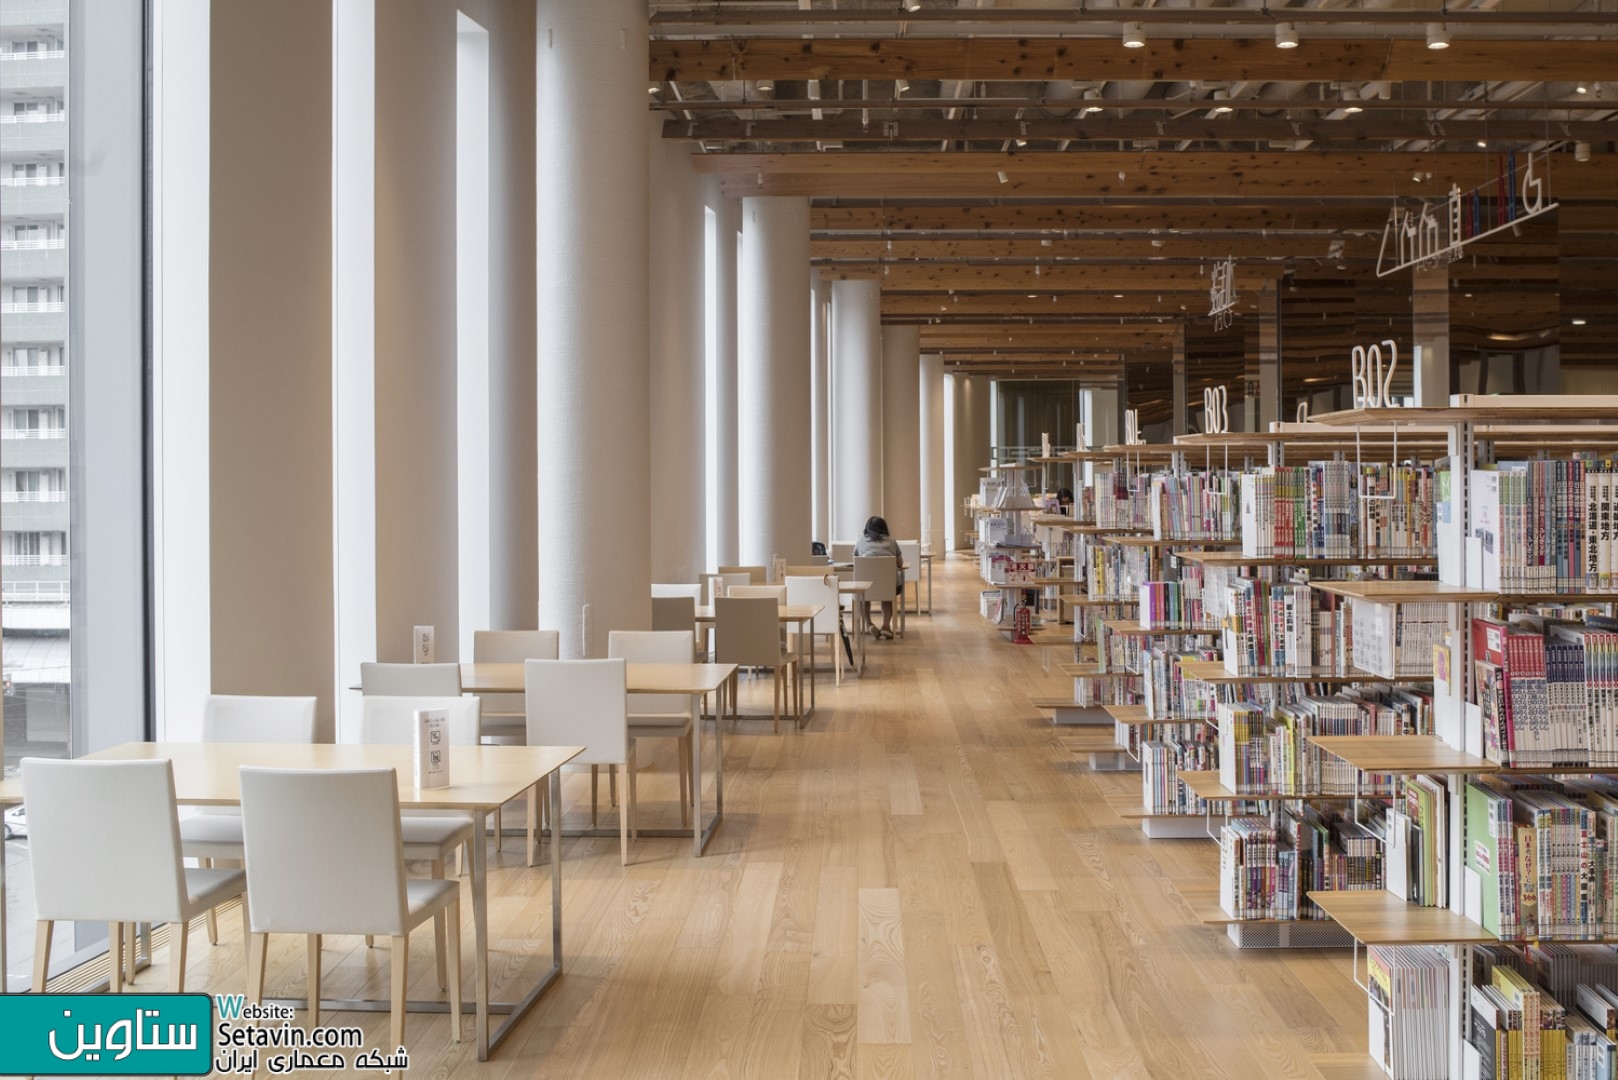 در این پست با ستاوین همراه باشید تا نگاهی به پروژه کتابخانه Toyama Kirari , در قلب شهر تویاما , ژاپن , داشته باشیم ... این ساختمان ترکیبی است از موزه هنر آبگینه ، کتابخانه شهر ویک بانک محلی. یک فضای باز به صورت یک وید بزرگ  در مرکز ساختمان باعث توزیع موثر نور از سمت جنوب شده که به اتصال سه فعالیت اصلی (کاربری) می کند.